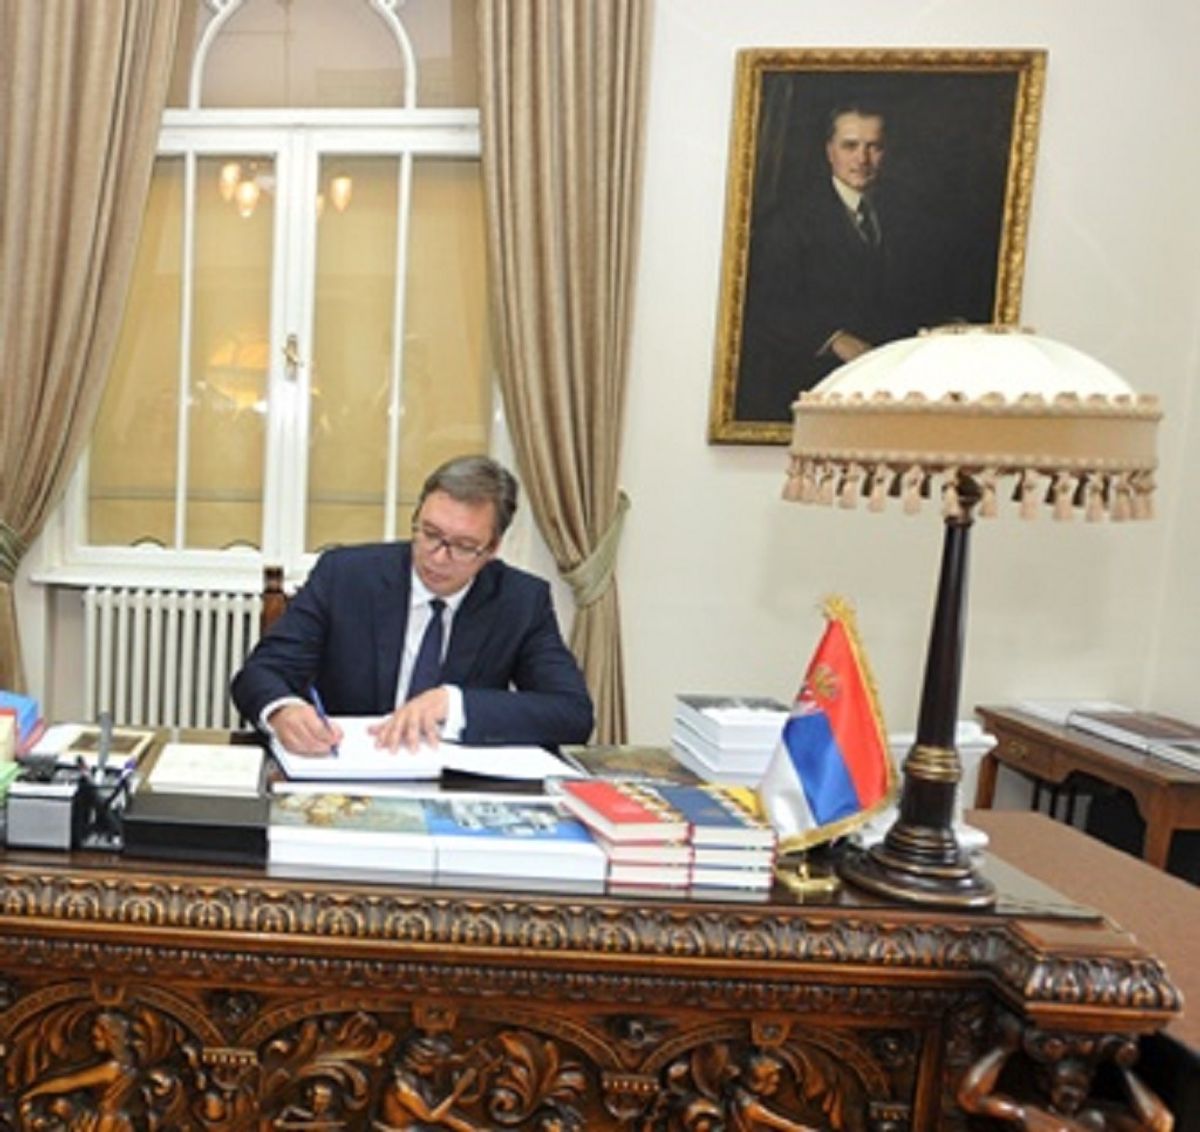 Predsednik Vučić na otvaranju izložbe „Kraljevina Srbija i Sjedinjene Američke Države“ u zgradi Arhiva Srbije